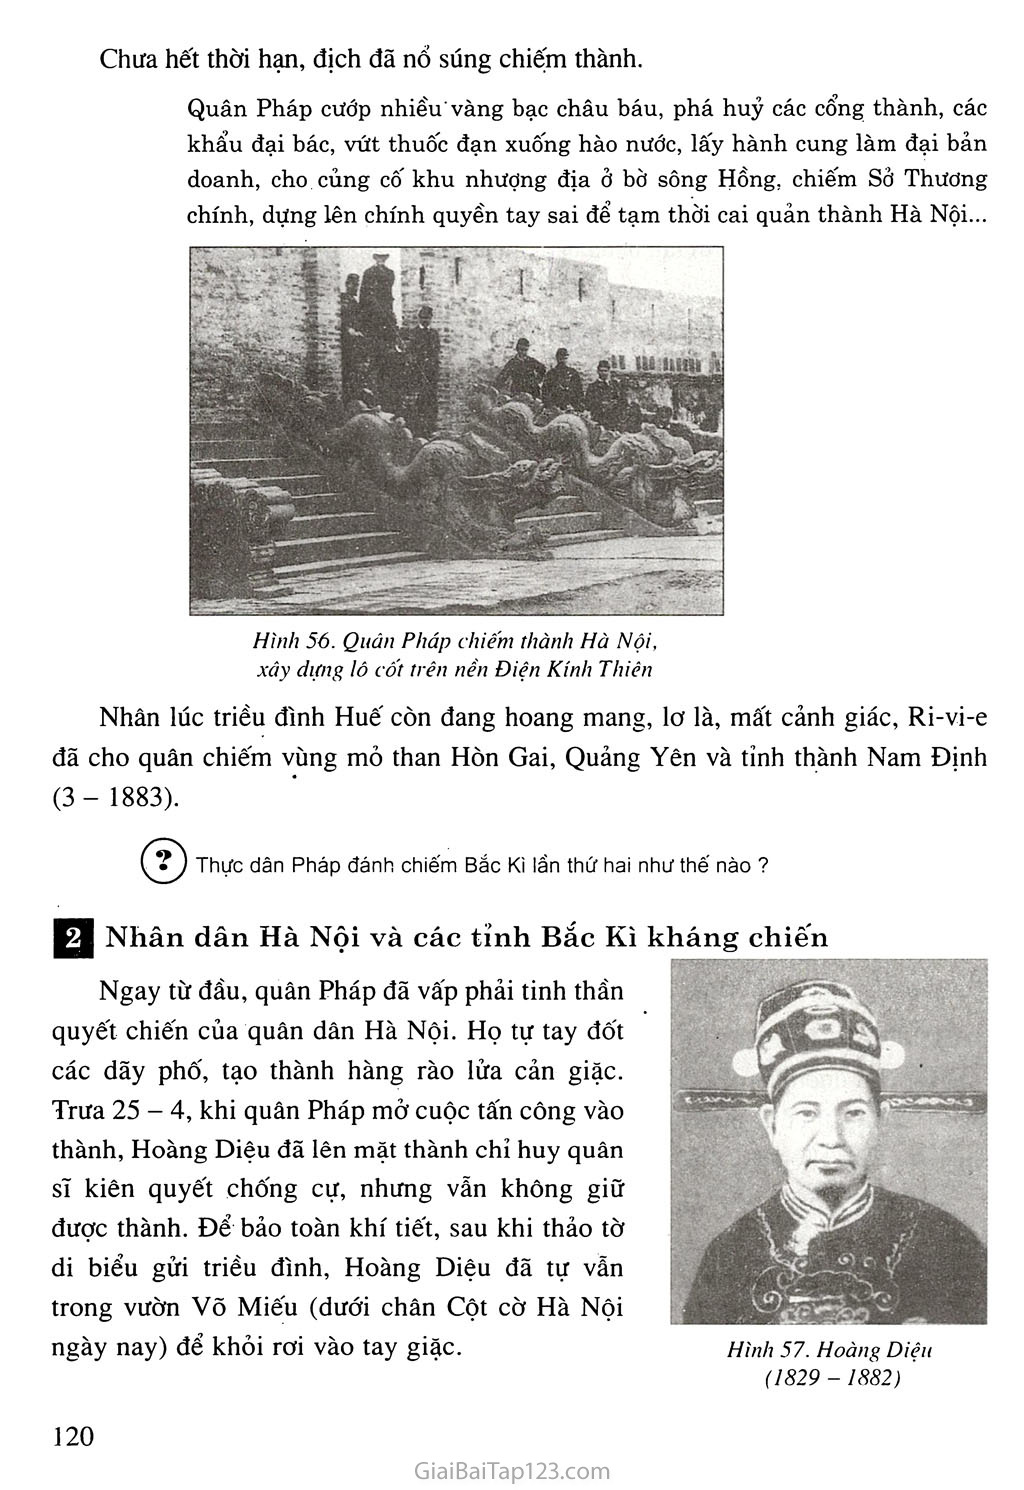 Bài 20. Chiến sự lan rộng ra cả nước. Cuộc kháng chiến của nhân dân ta từ năm 1873 đến năm 1884. Nhà Nguyễn đầu hàng trang 6